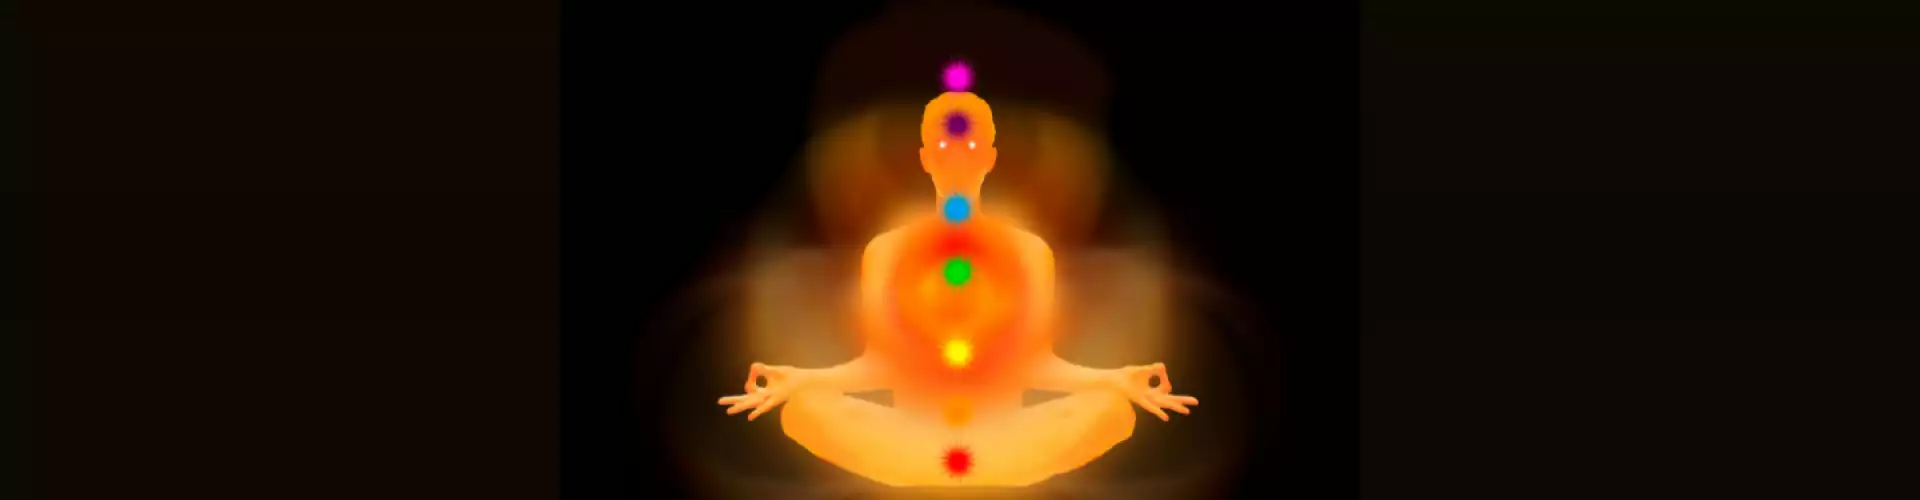 Yoga Prānāyāma pour ouvrir votre chakra du front